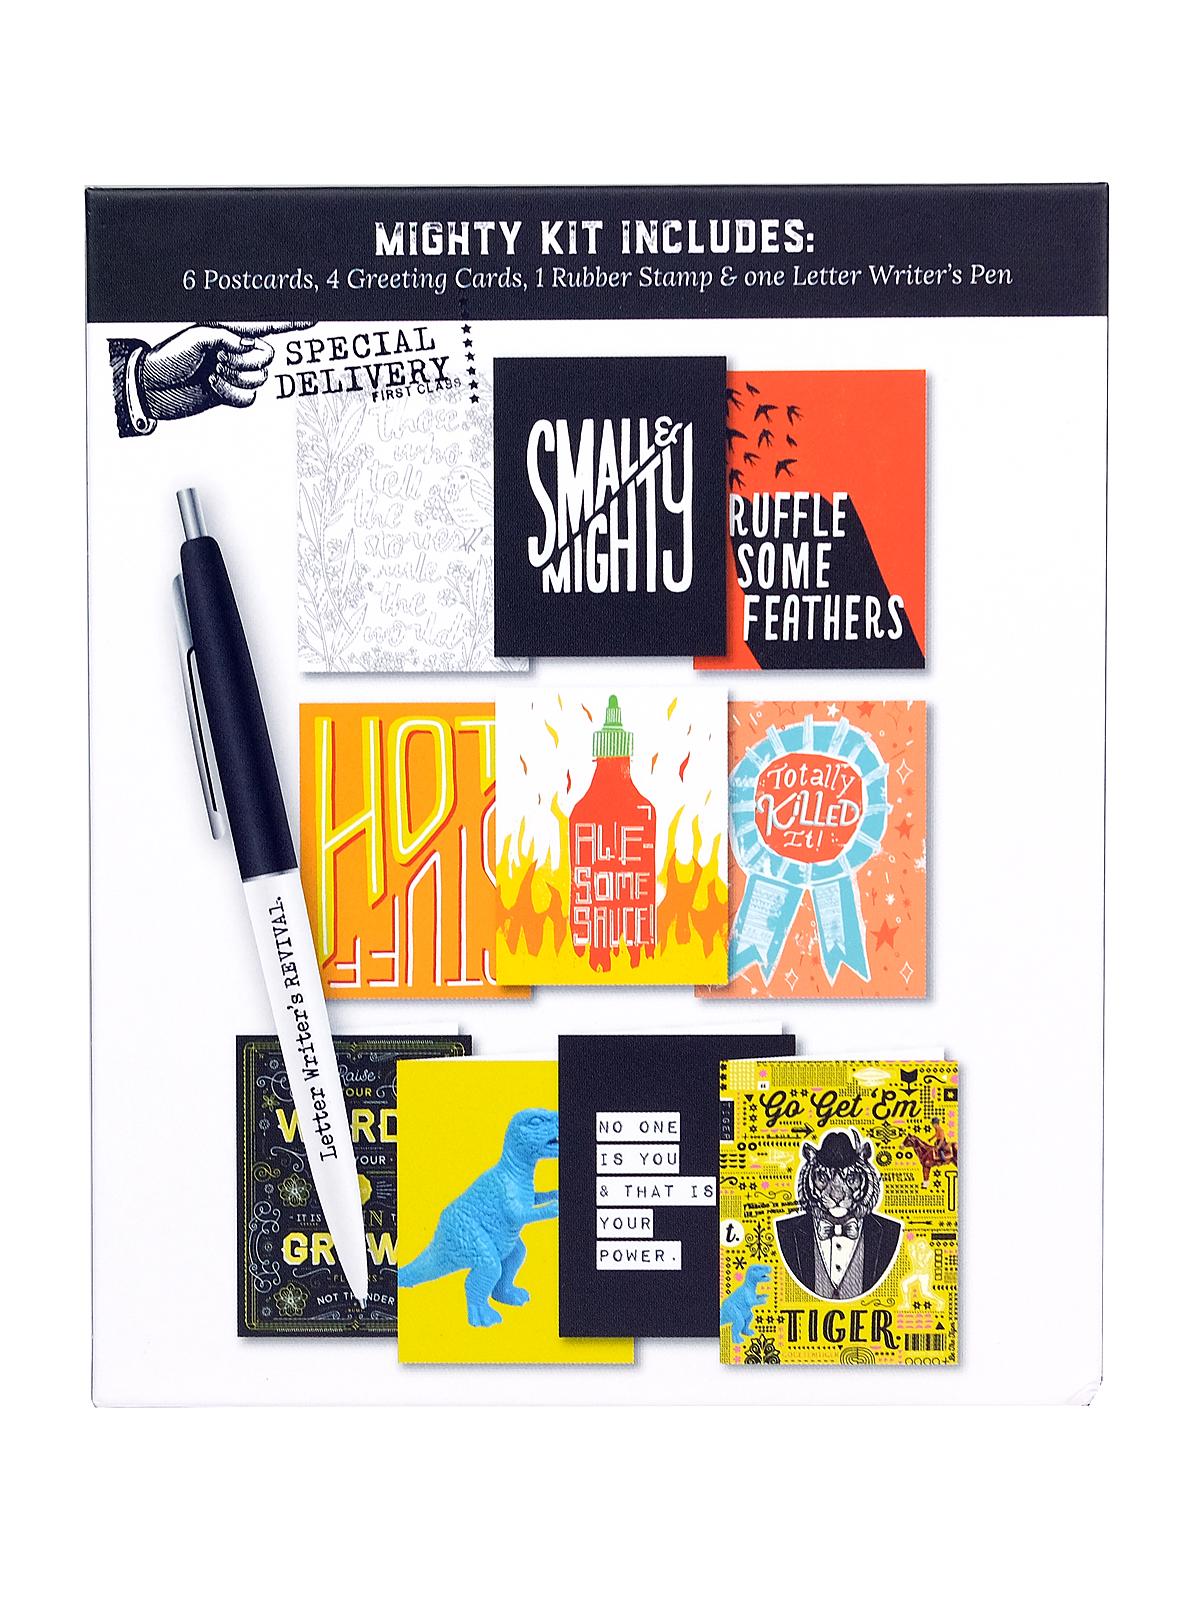 Letter Writer's Revival Kit Mighty